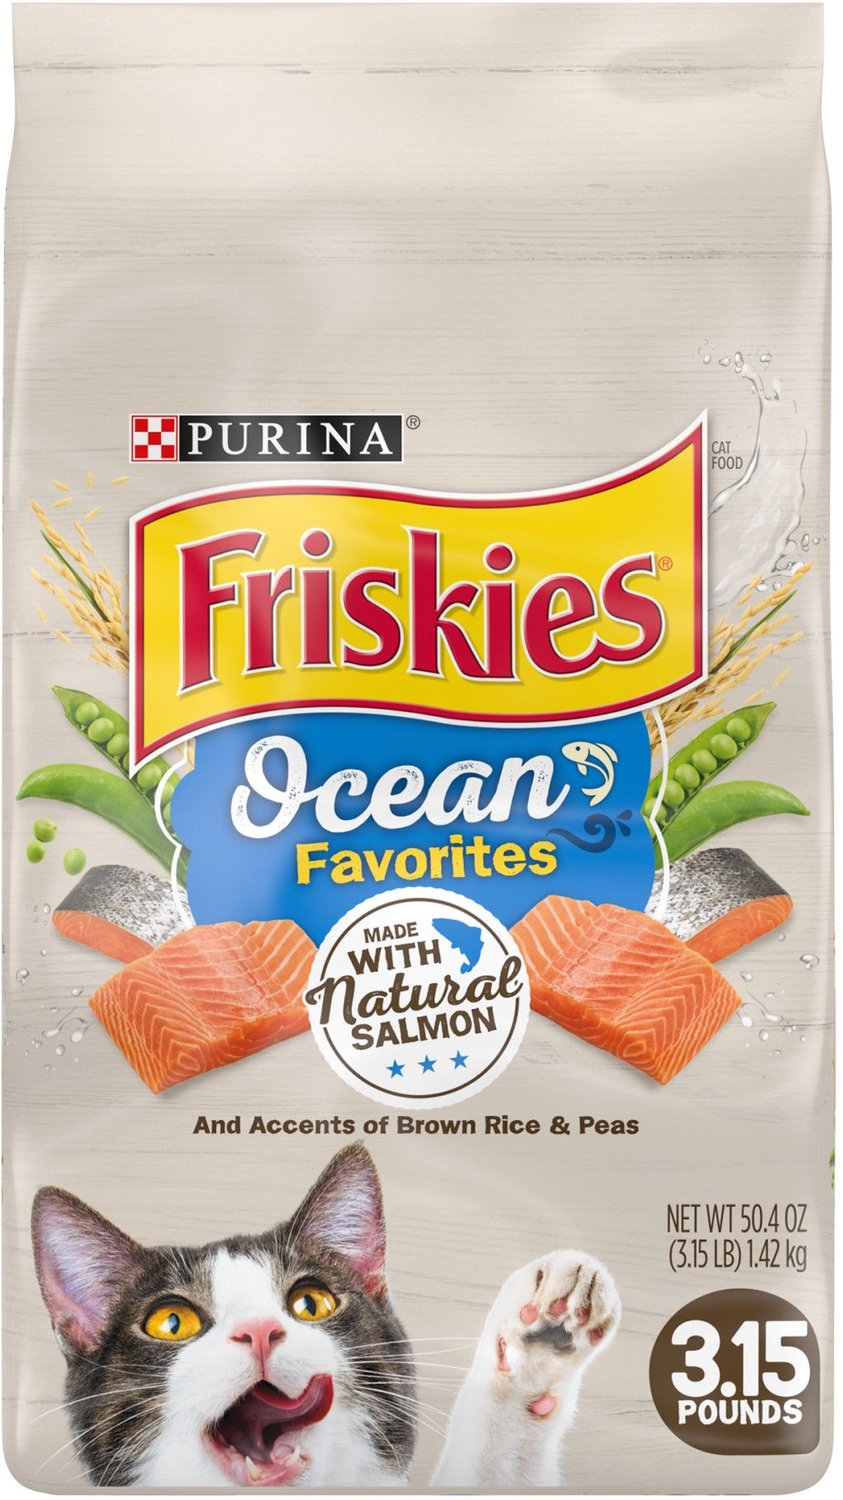 Friskies Ocean Favorites with Natural Salmon Dry Cat Food, 3.15lb bag